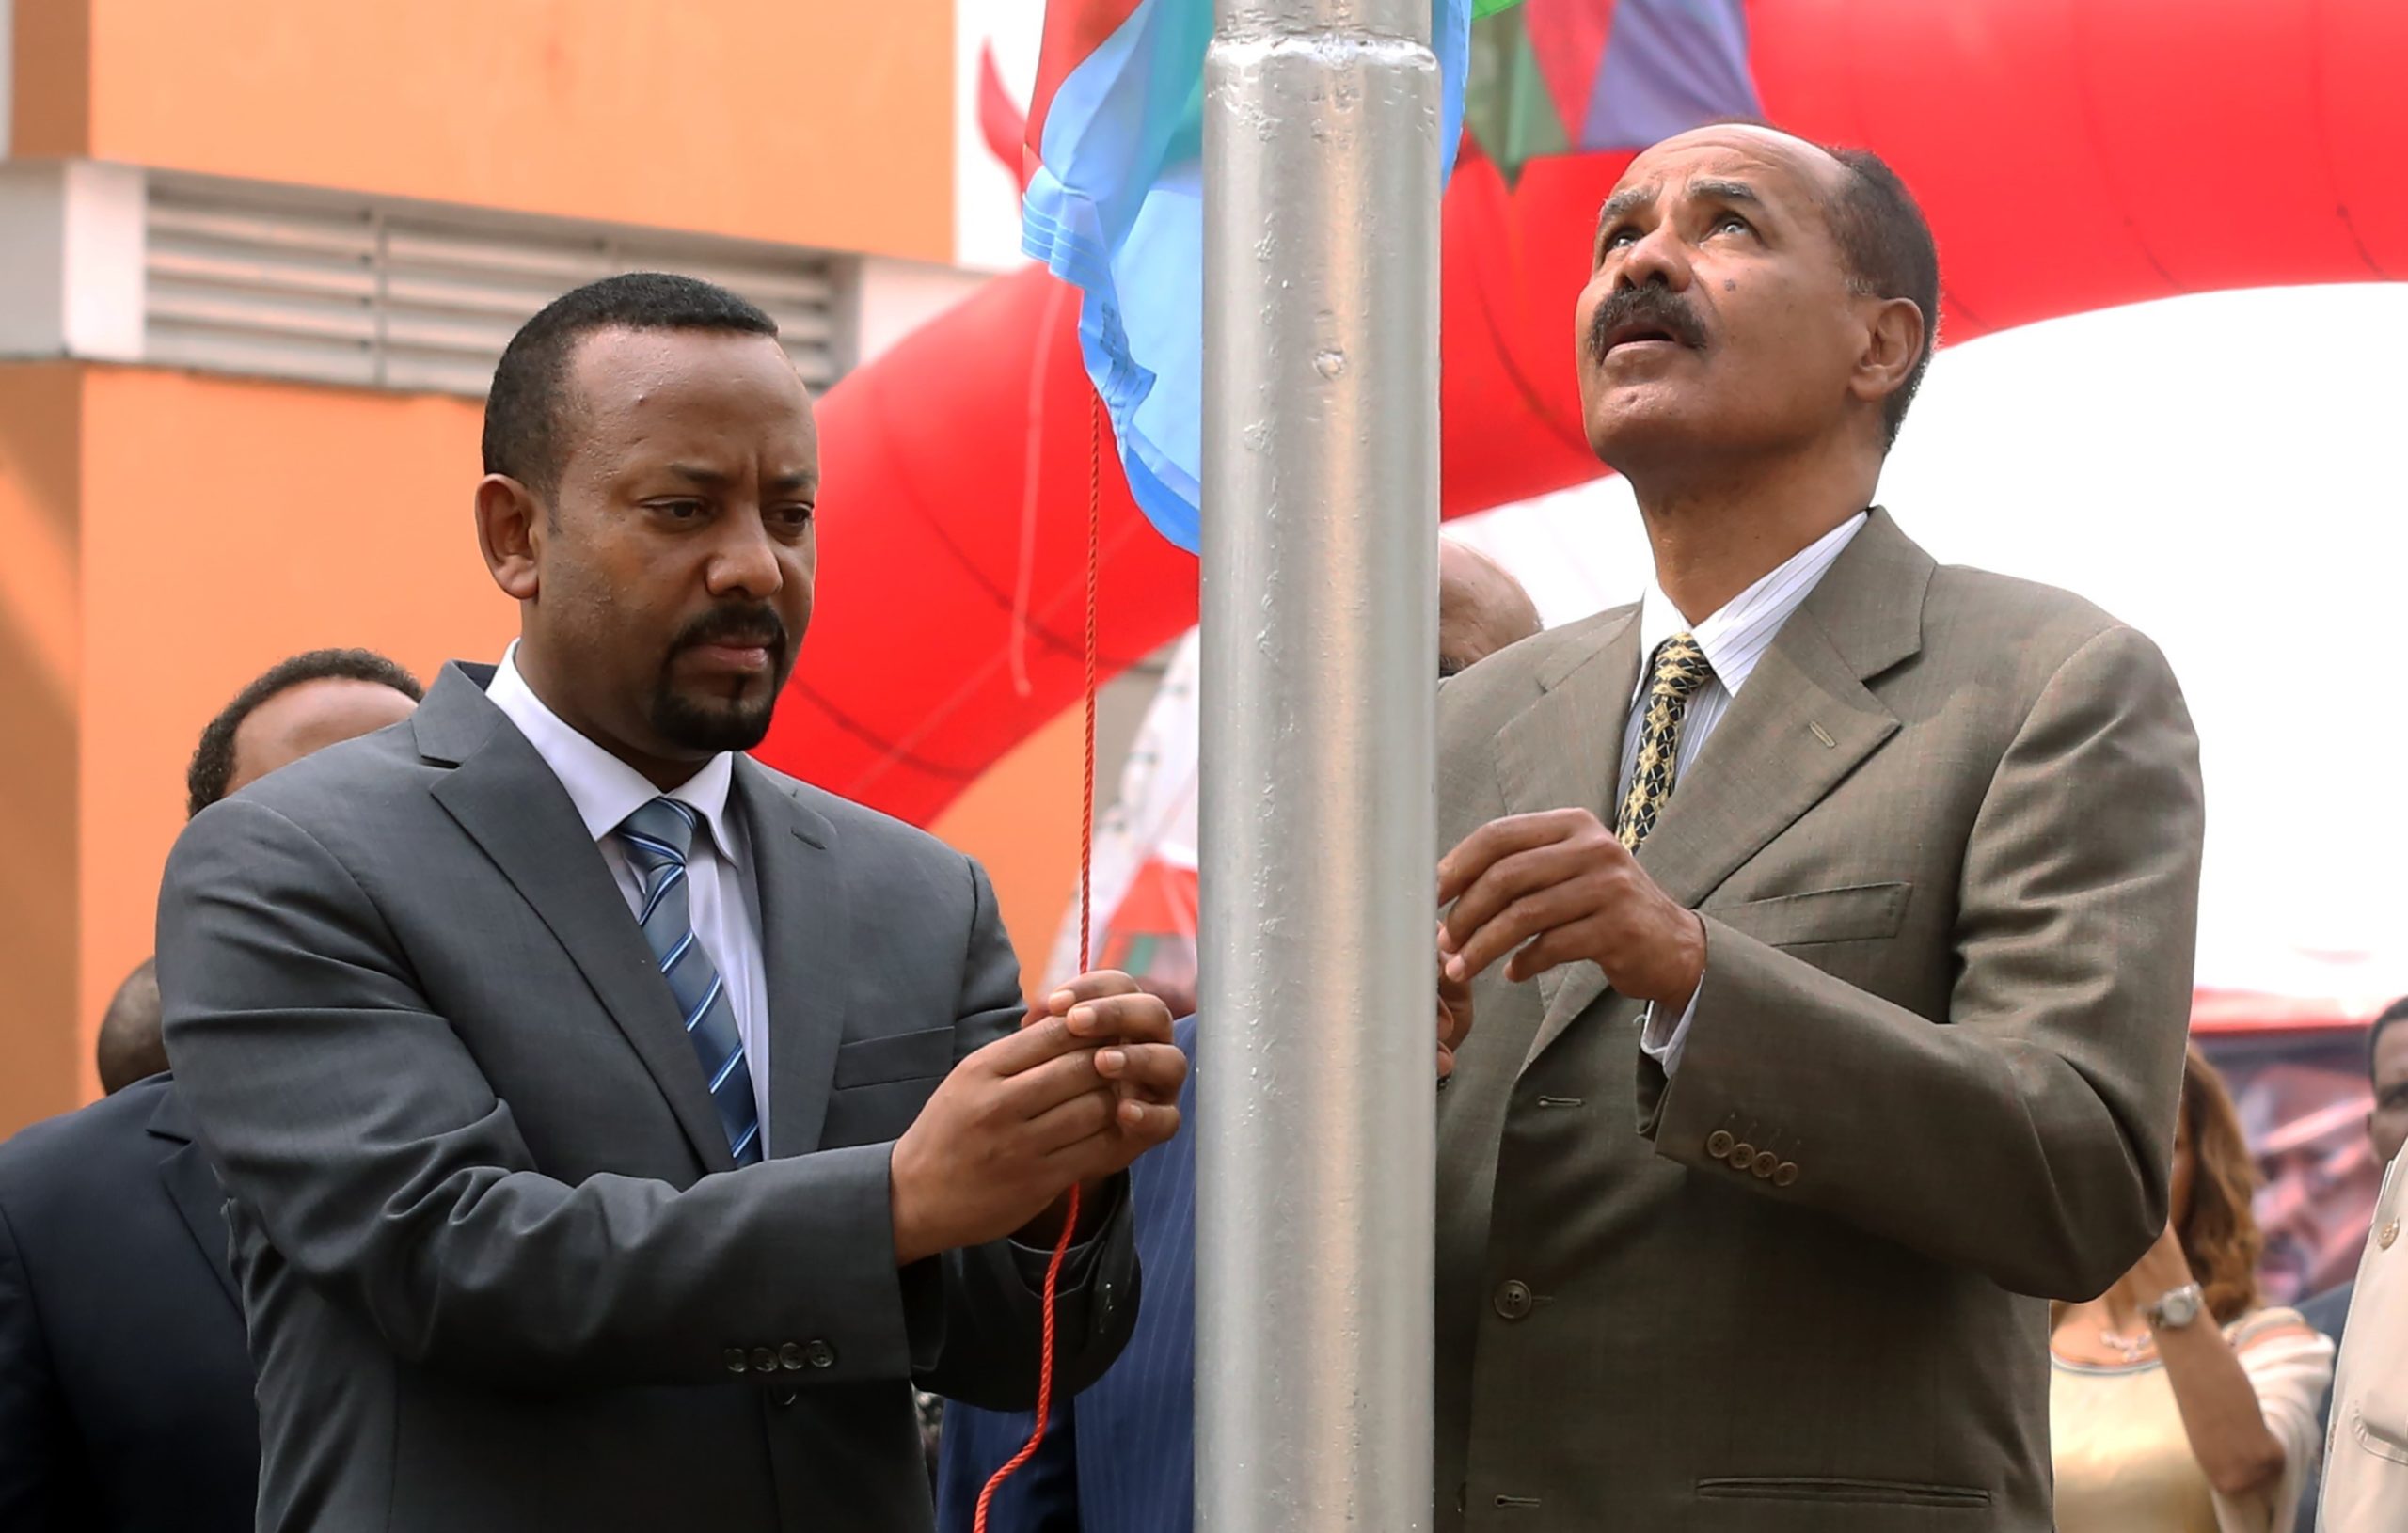 Abiy Ahmed ja Isaias Afewerki avasivat Eritrean-lähetystön Addis Abebassa vuonna 2018. Kuva: Minasse Wondimu Hailu/Anadolu agency/All Over Press